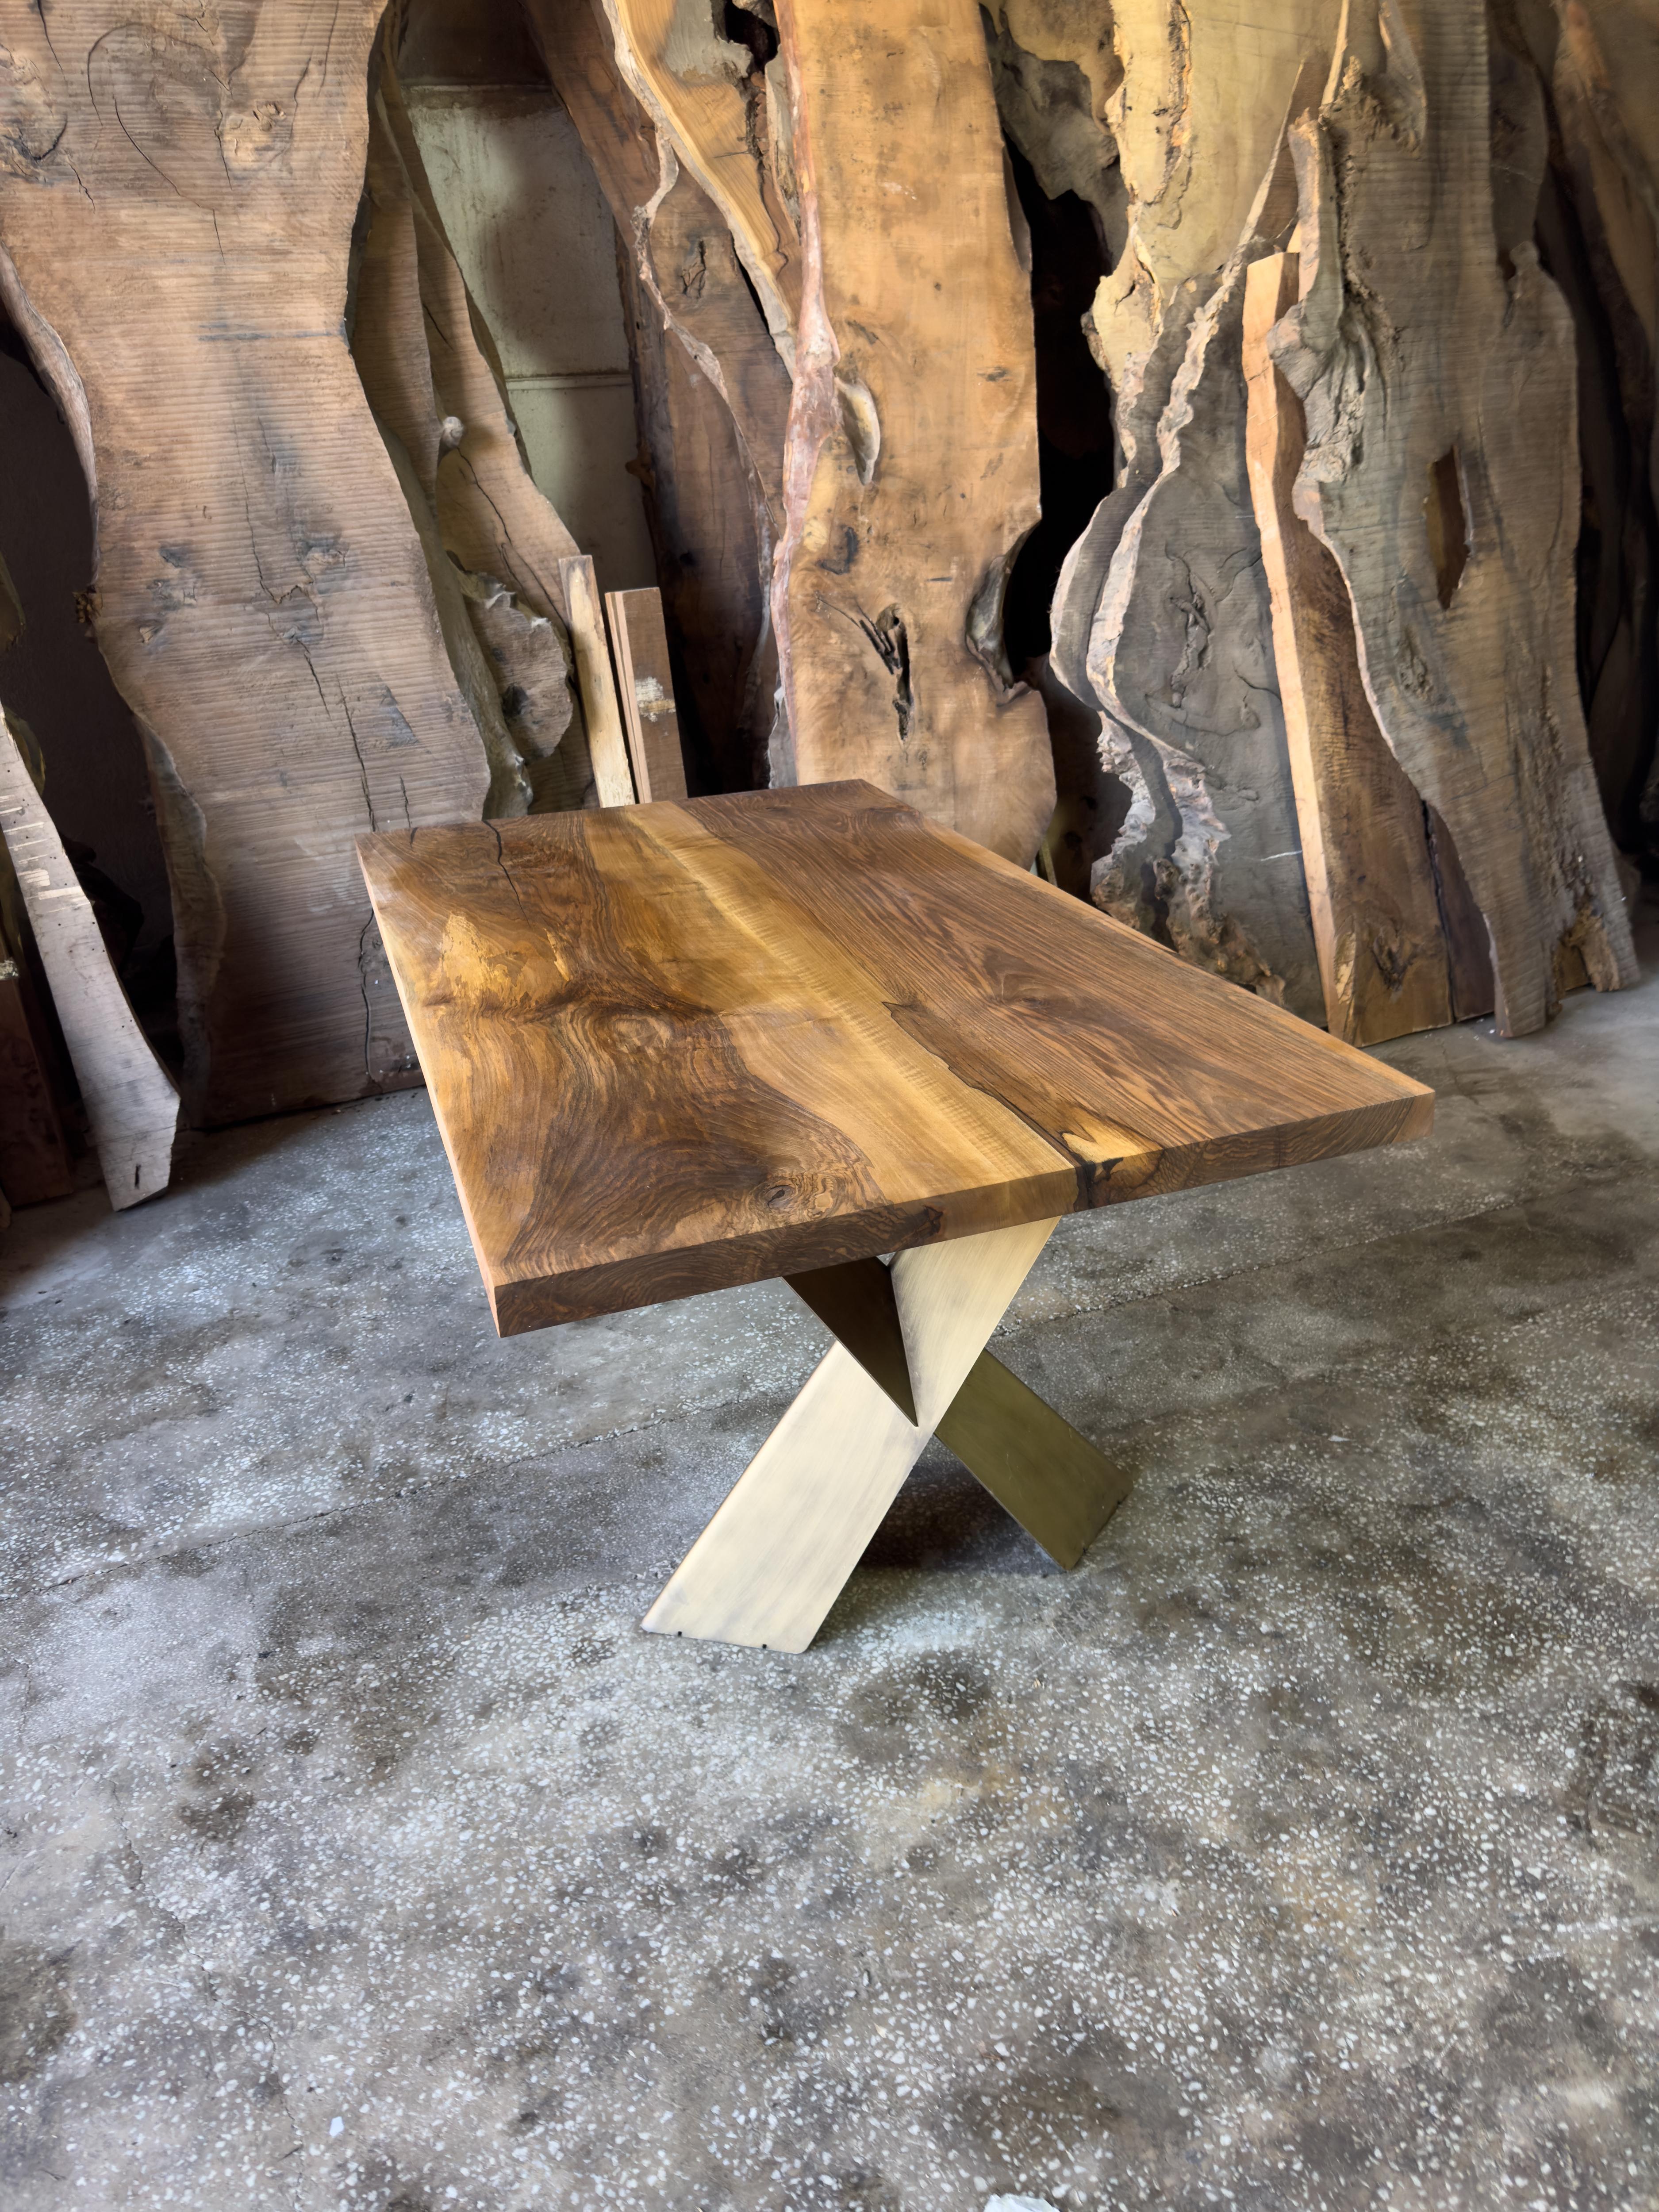 Tisch aus Walnussholz mit lebendiger Kante

Dieser Tisch ist aus natürlichem, massivem Walnussholz gefertigt. Die Größe von 36